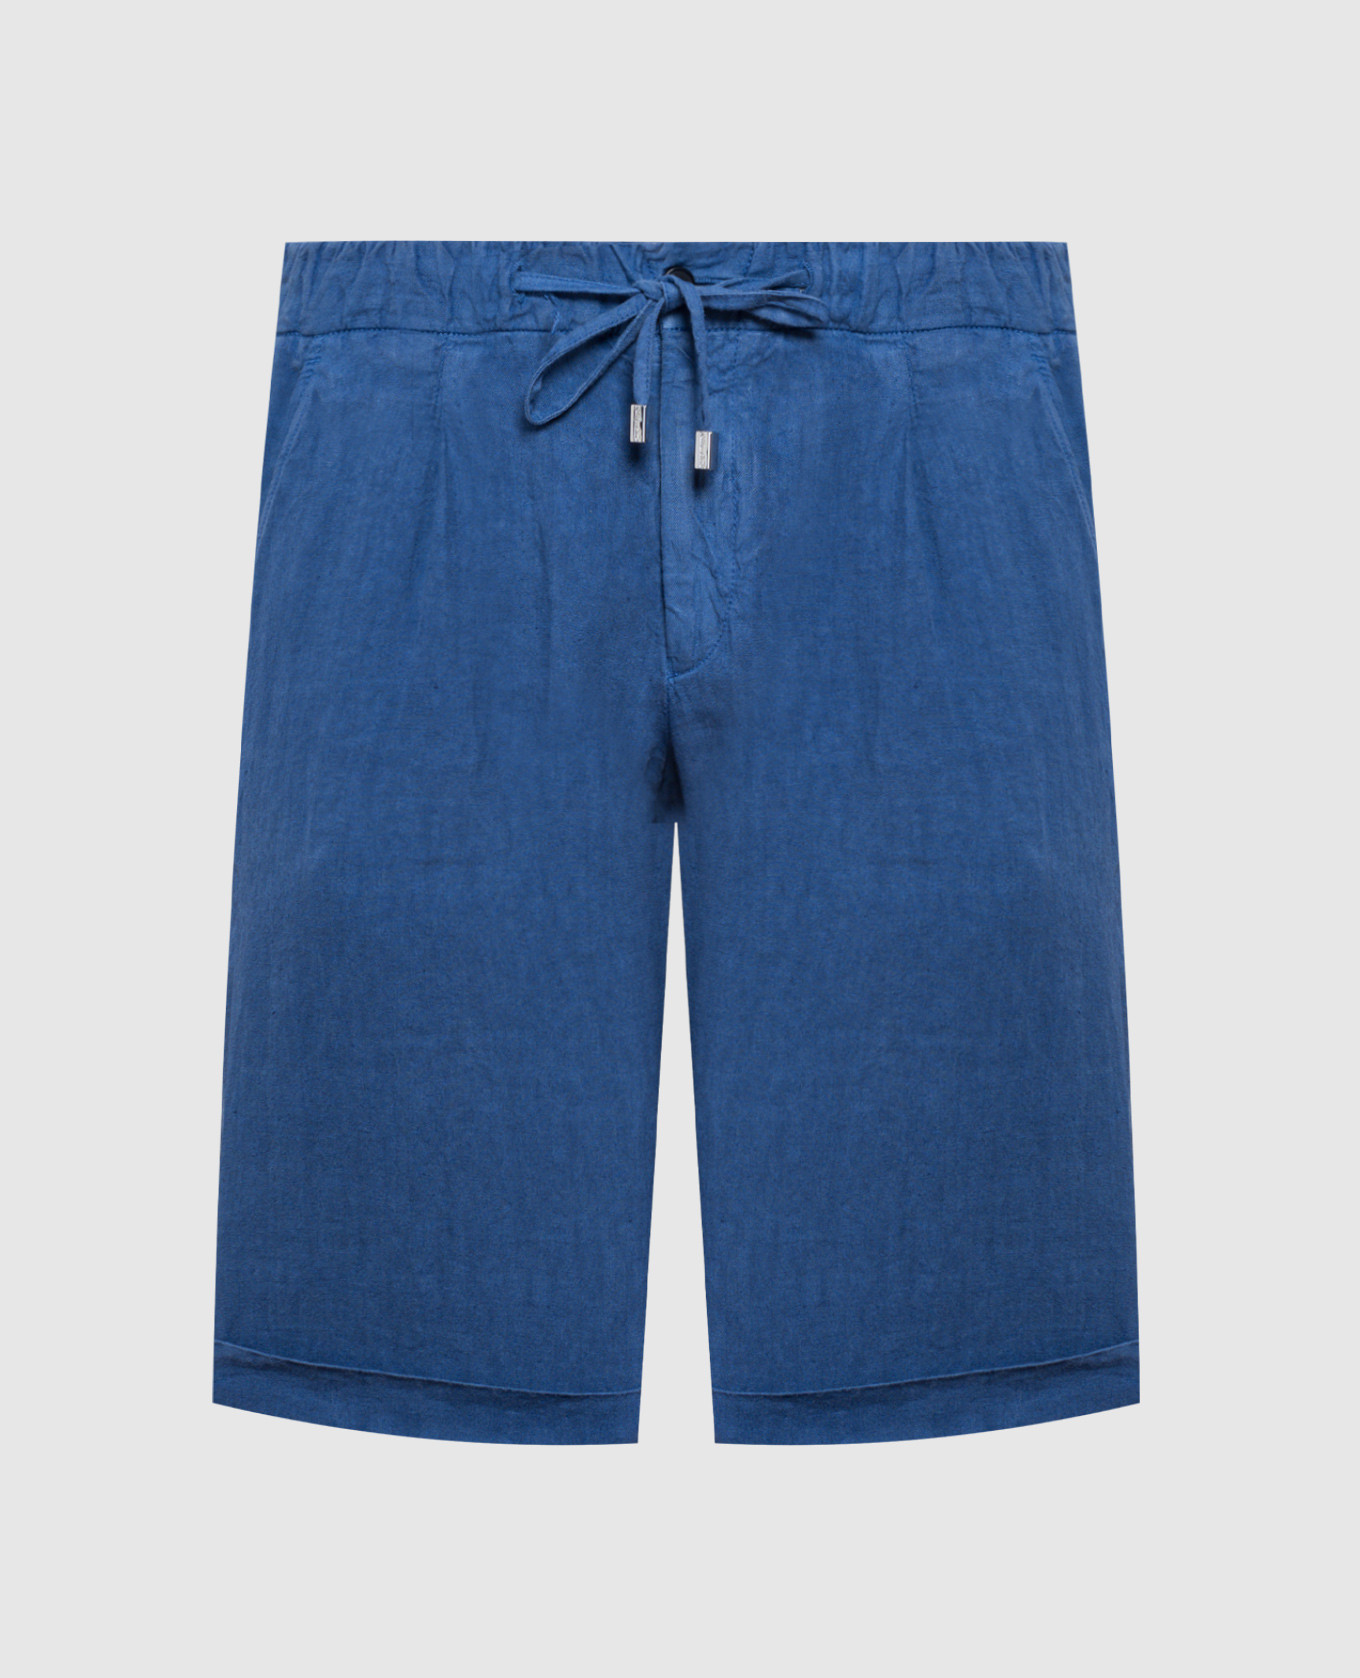 Blue linen shorts